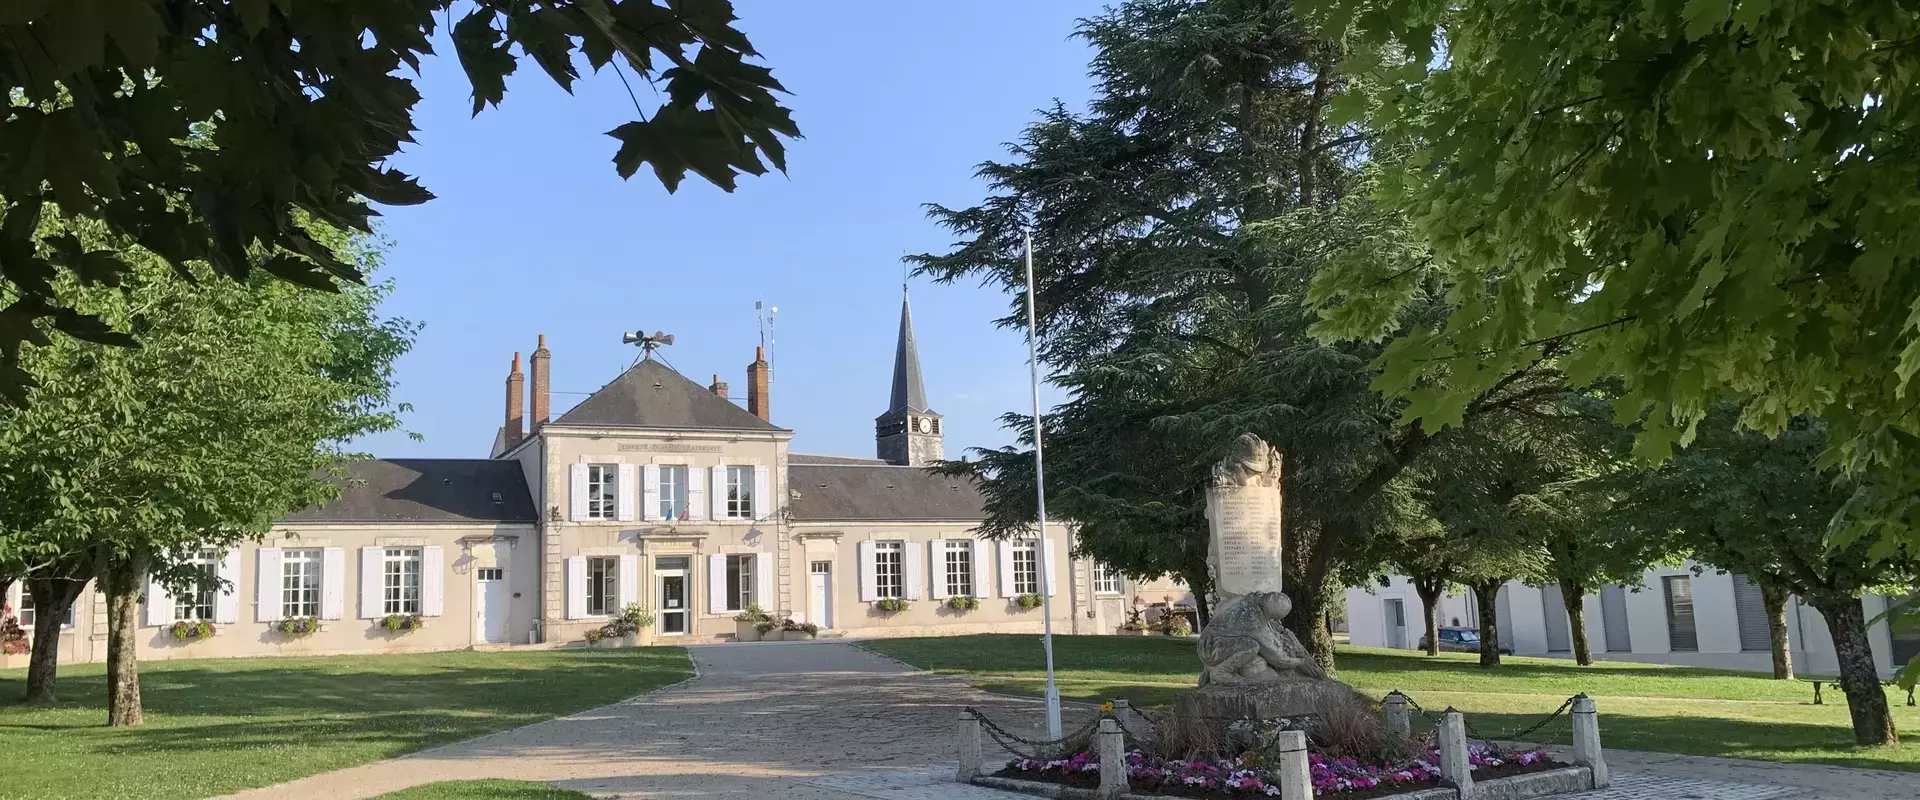 Bienvenue sur le site officiel de la commune de Saint Ay (45) Loiret